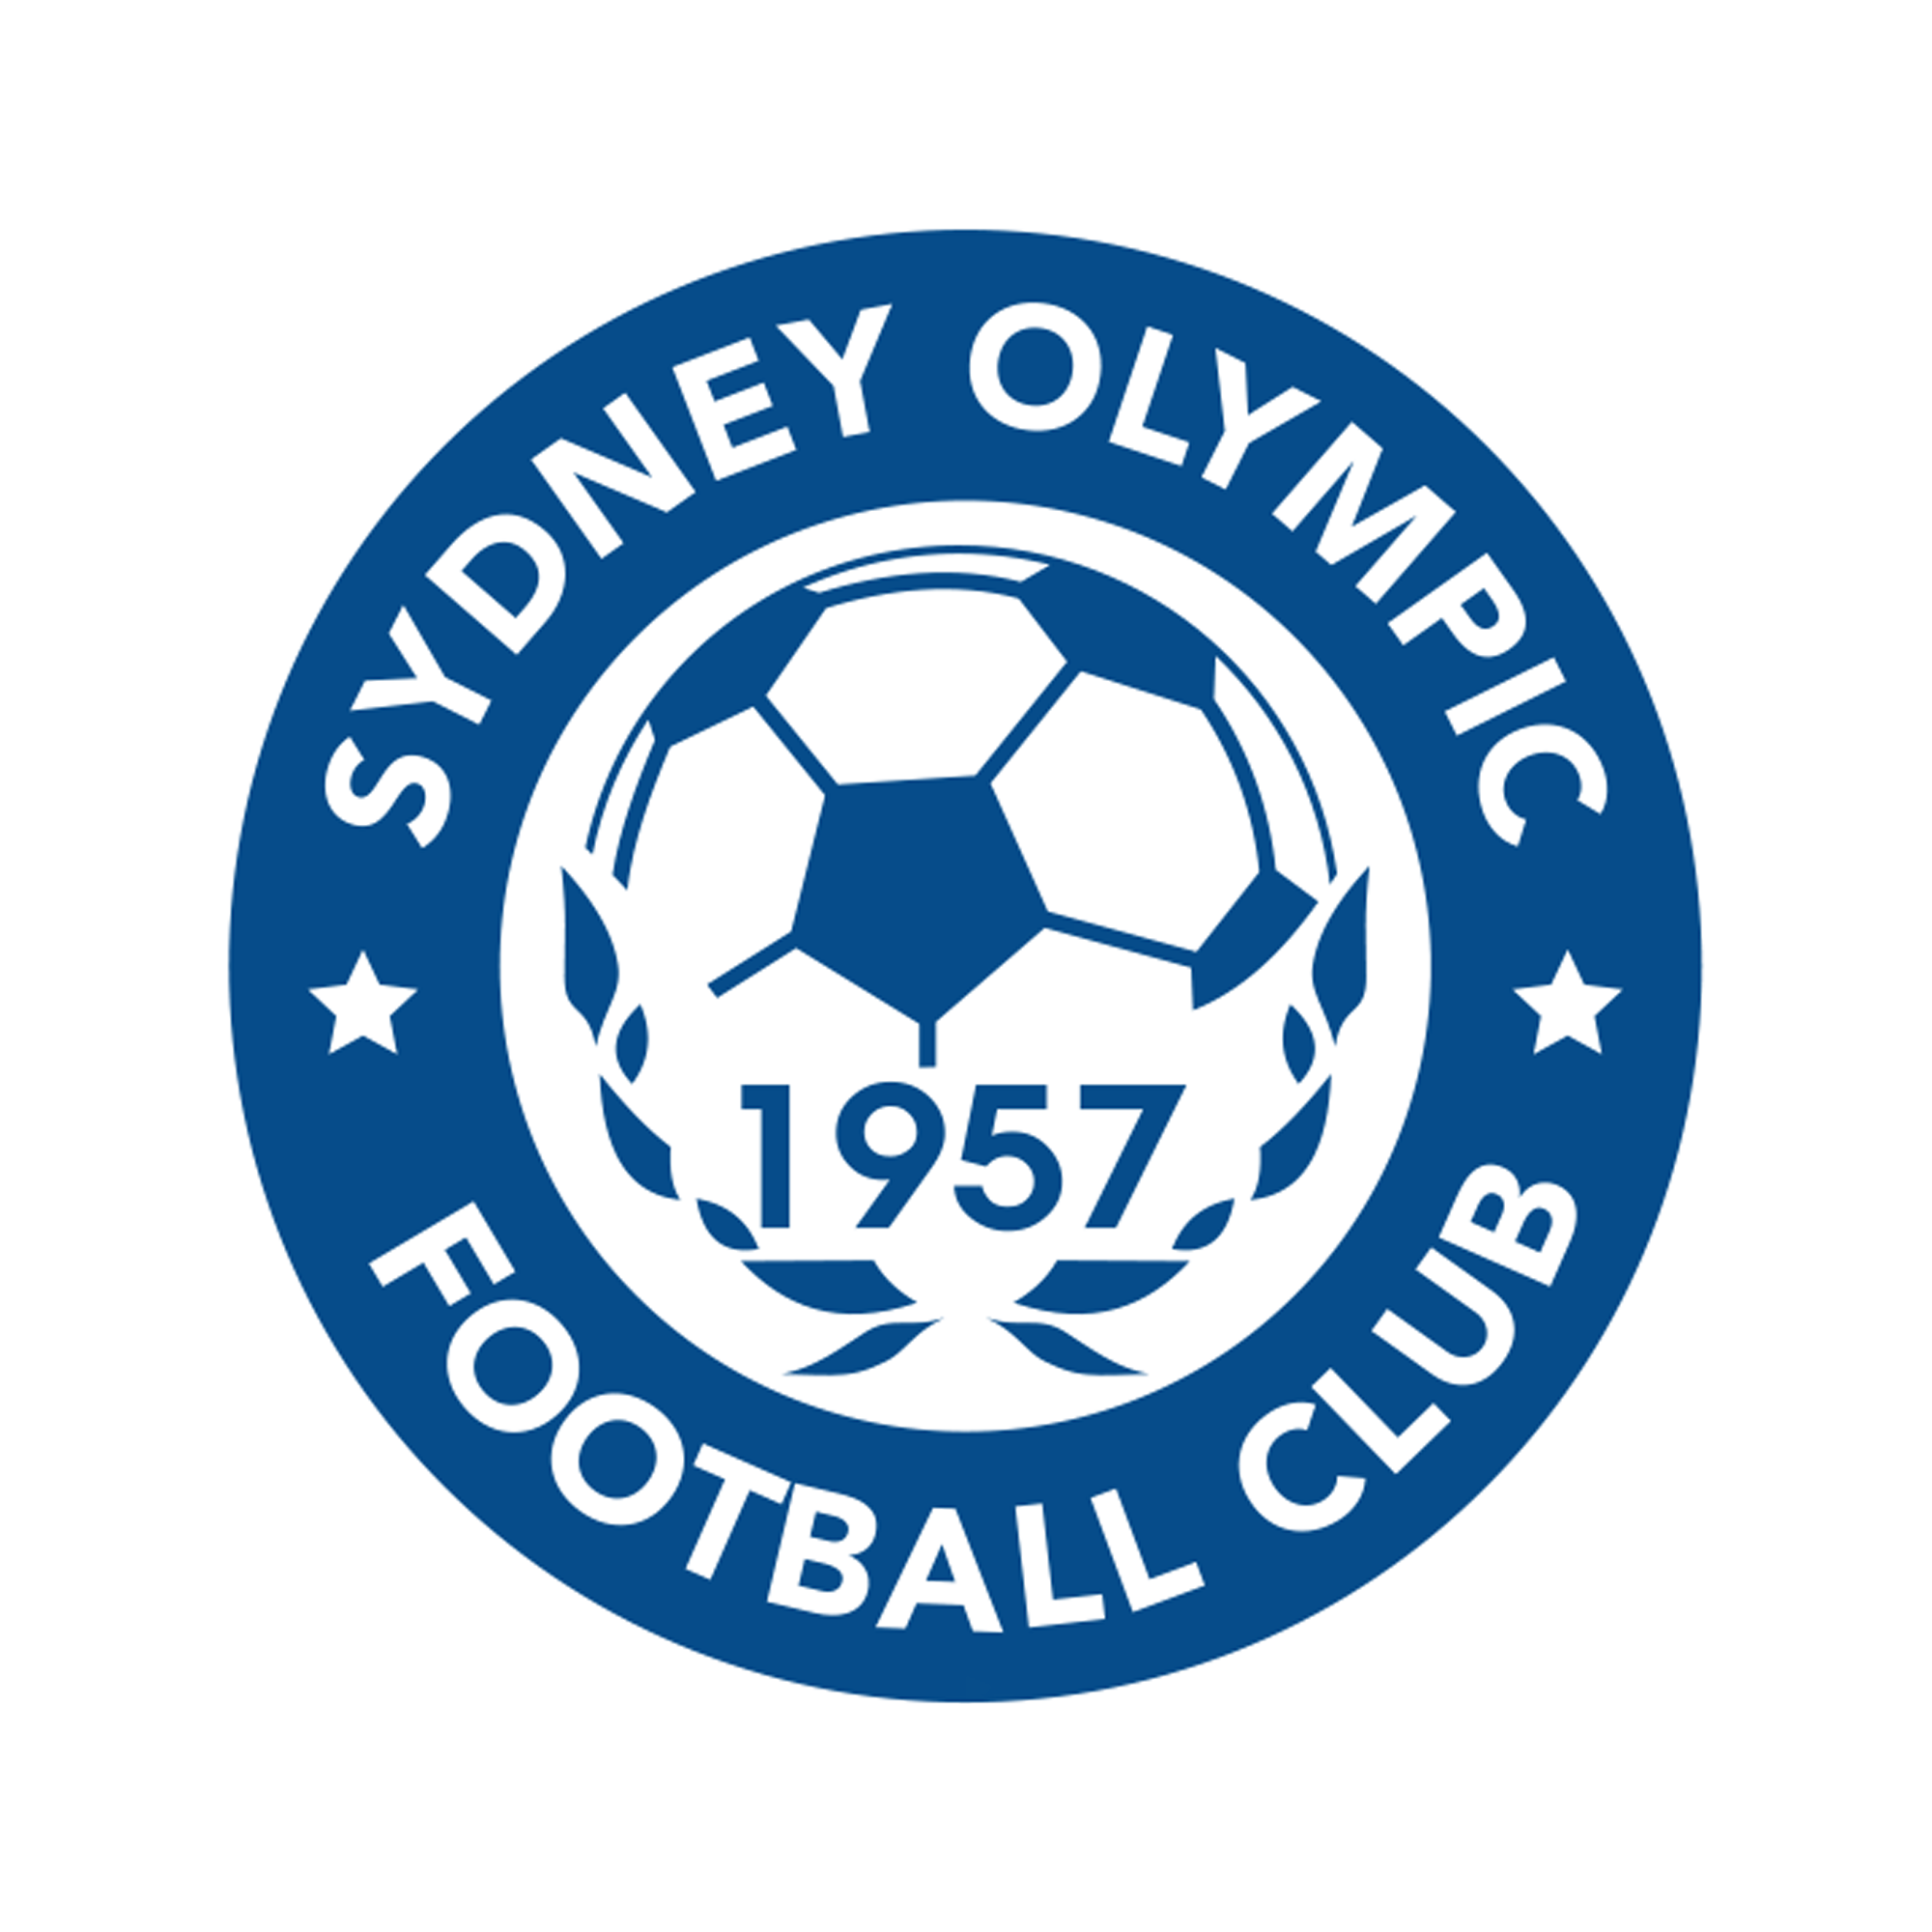 Sydney Olympic Football Club